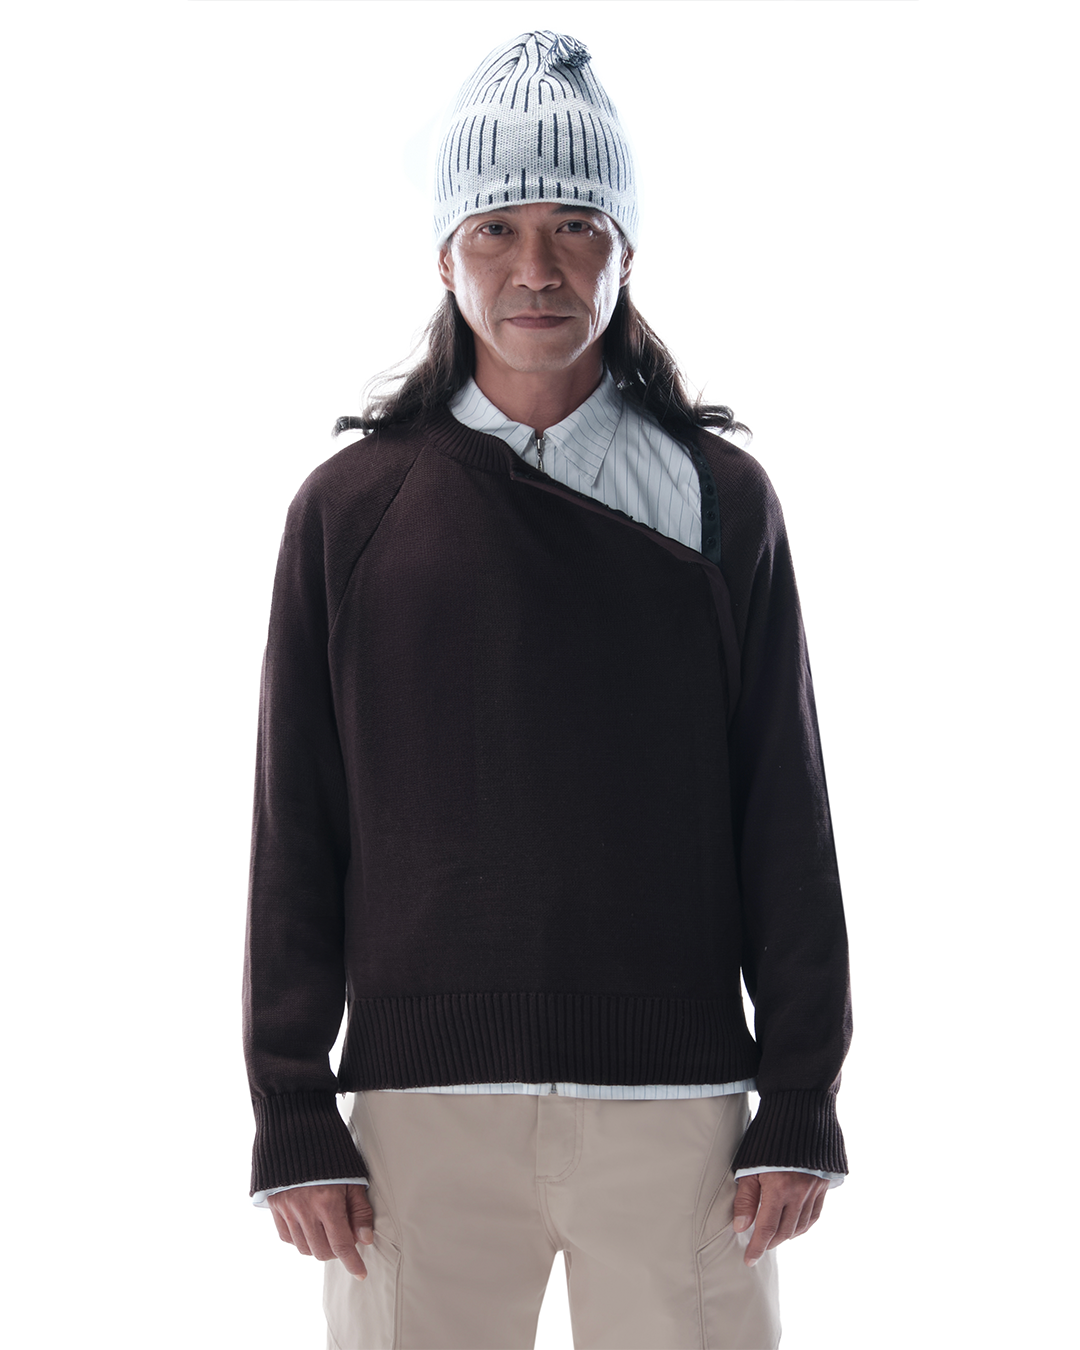 Aquino Brown Sweater